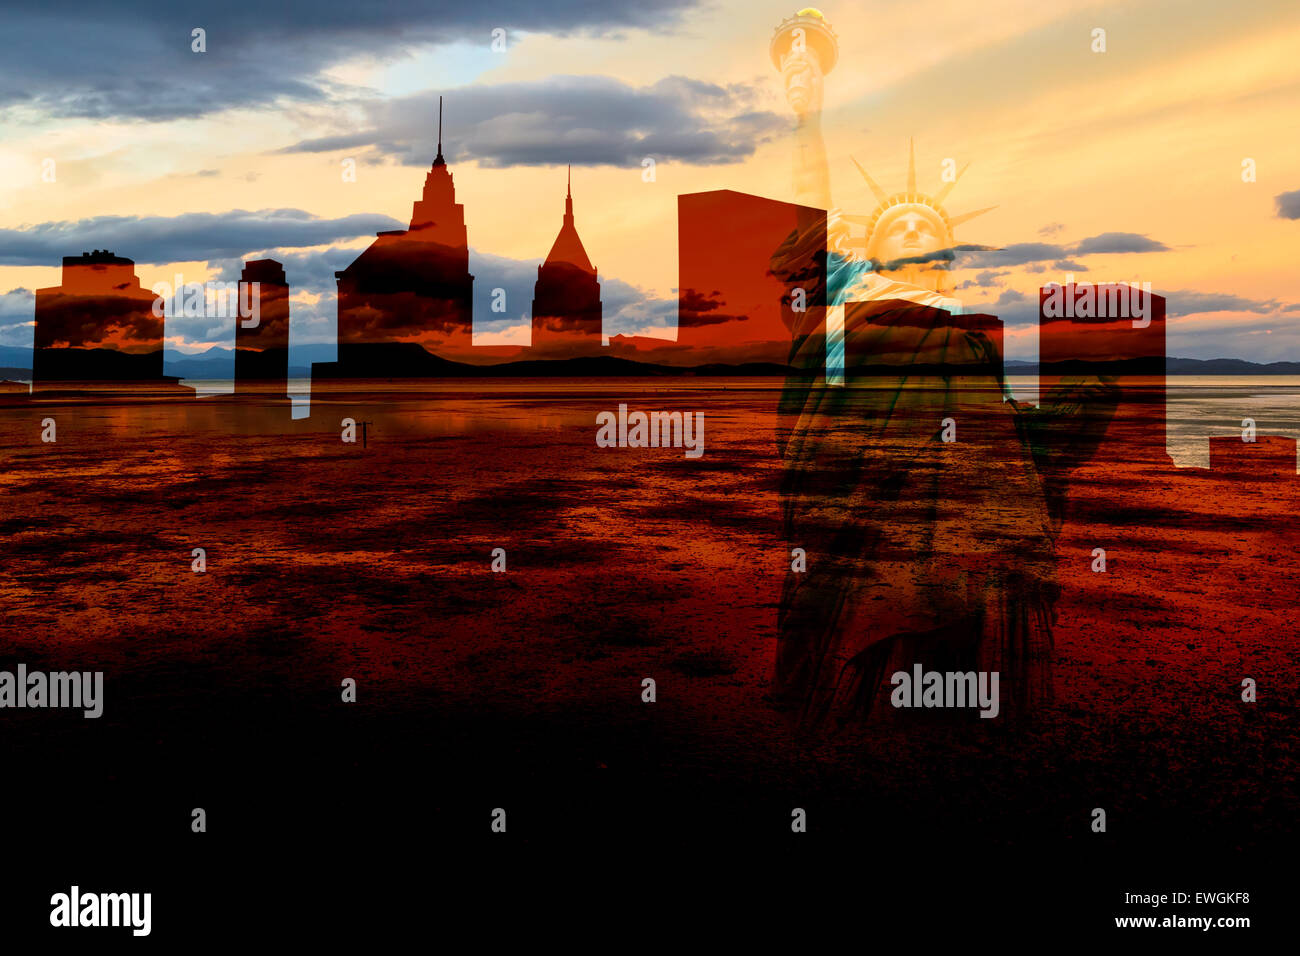 Scénario de guerre post-apocalyptique à New York avec ghost city skyline at sunset avec description de la Statue de la liberté en fond, Manhattan Banque D'Images